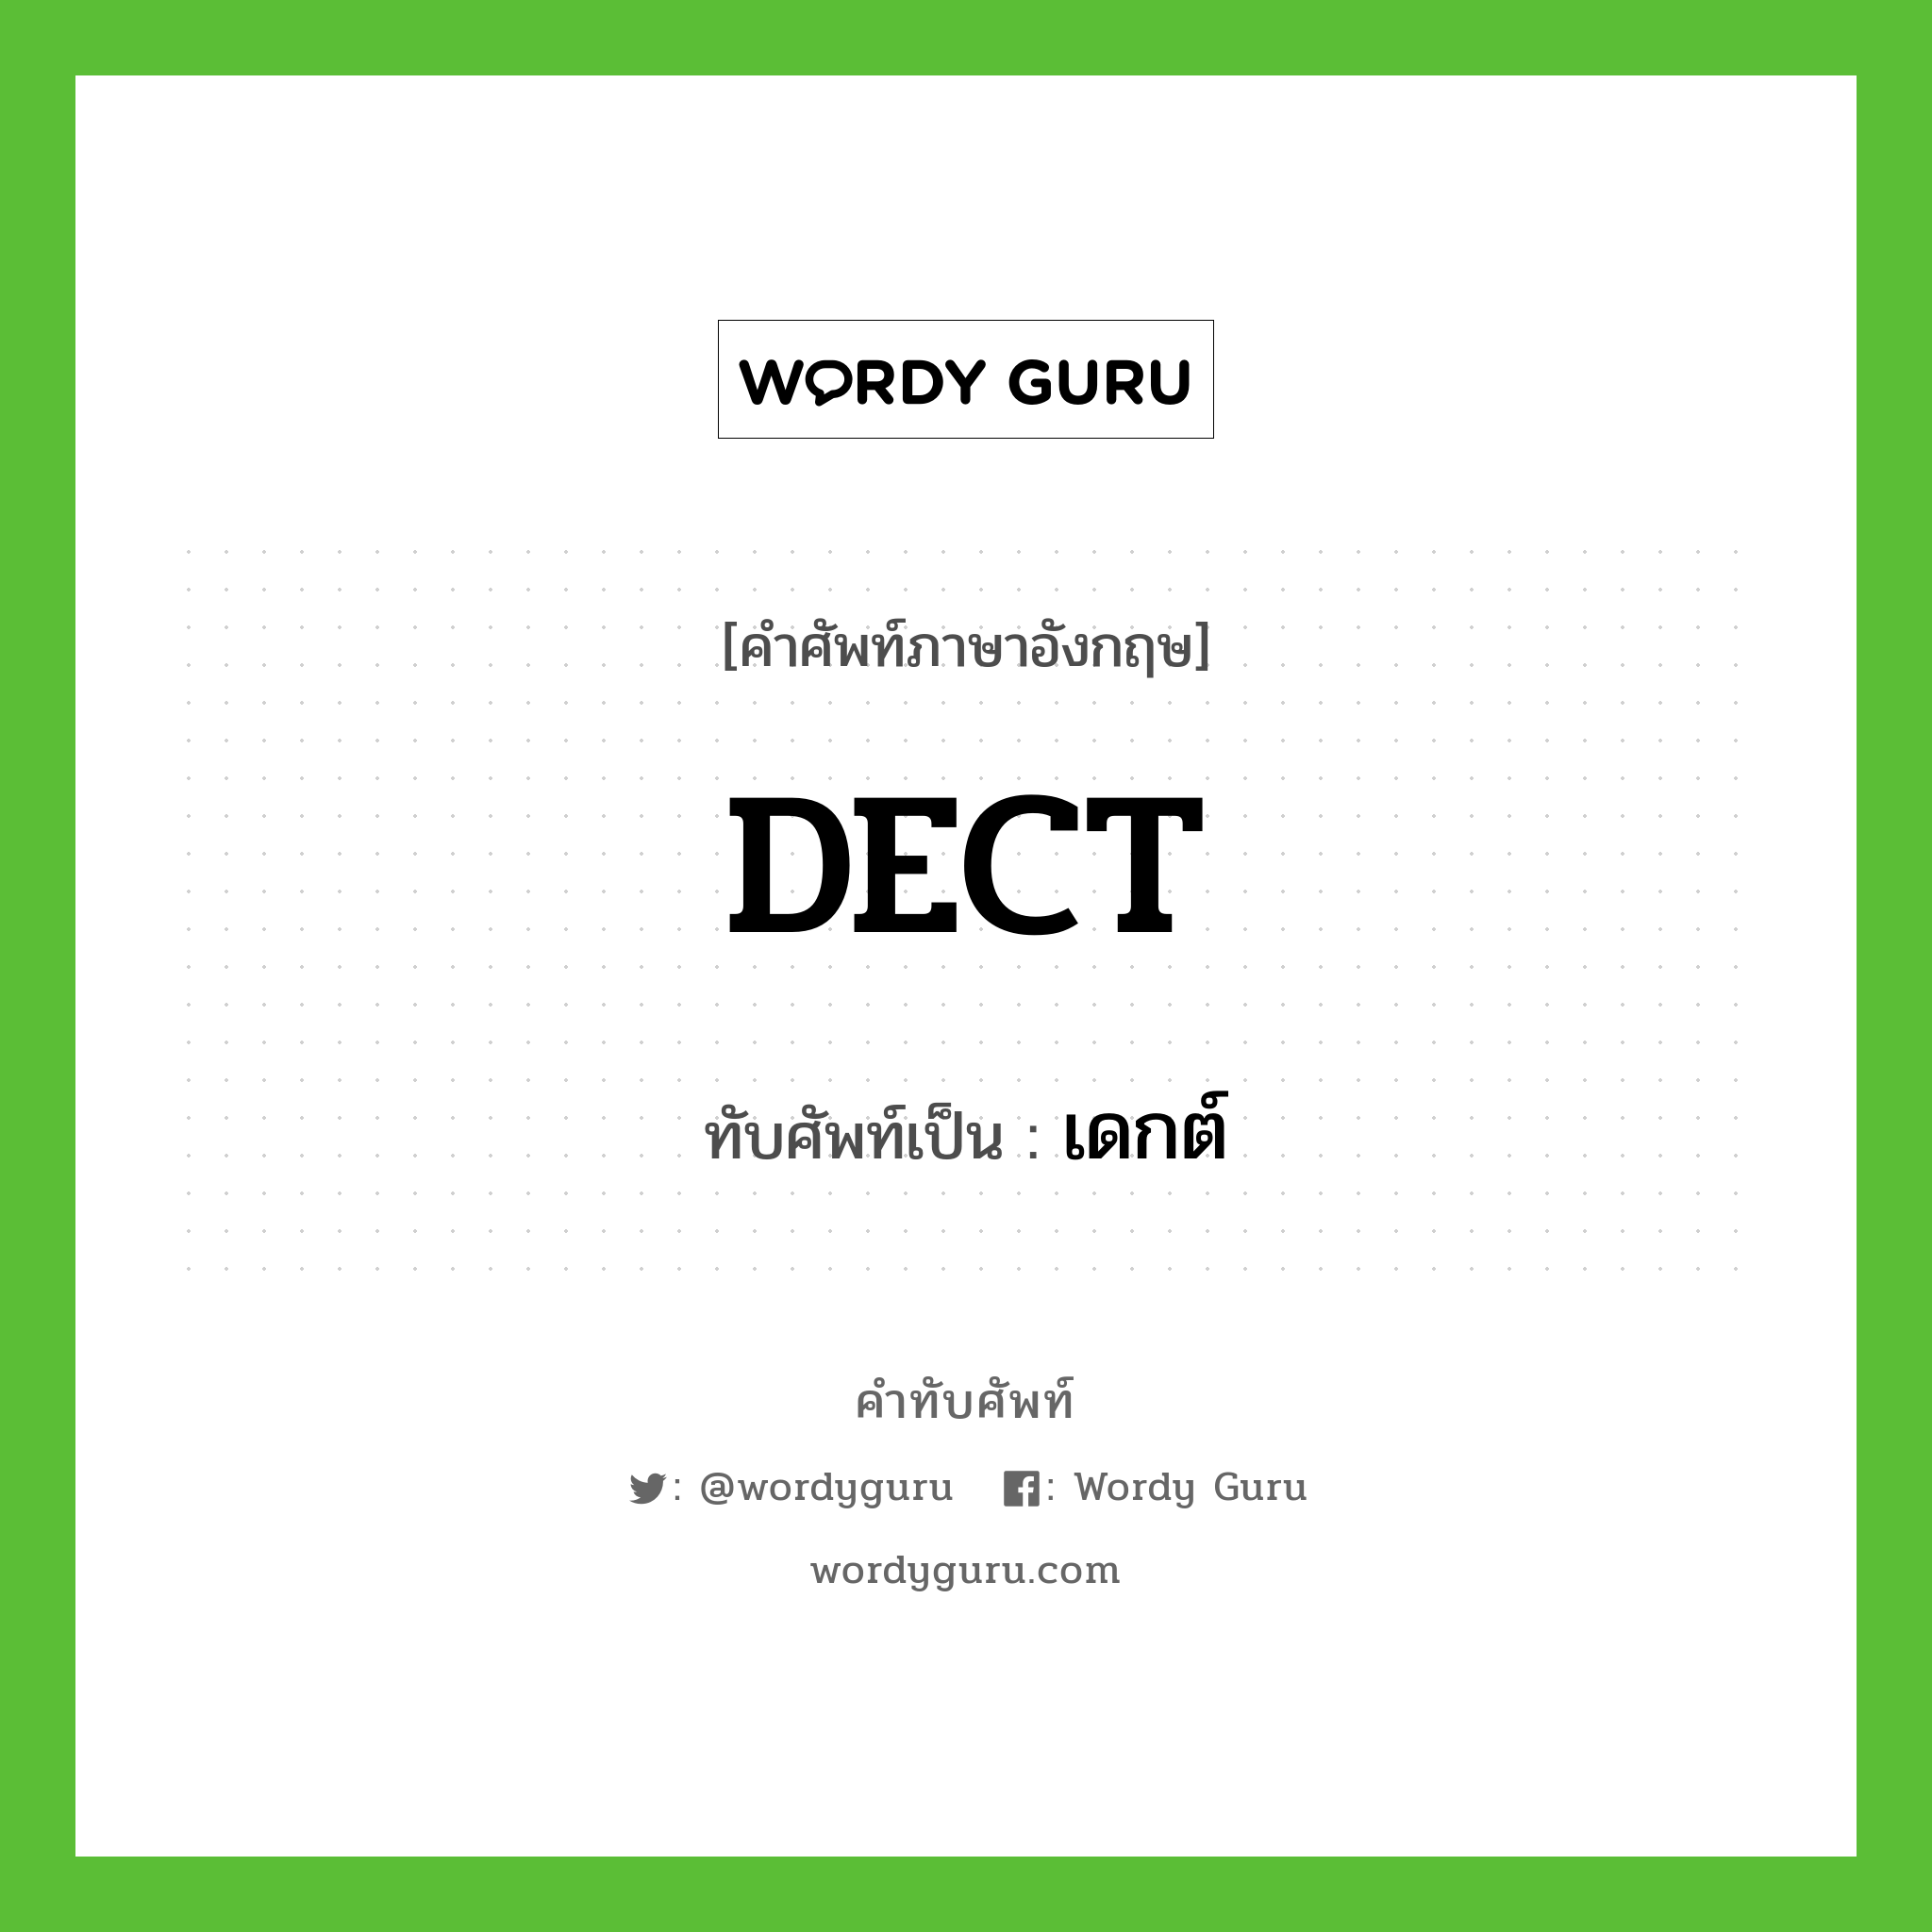 DECT เขียนเป็นคำไทยว่าอะไร?, คำศัพท์ภาษาอังกฤษ DECT ทับศัพท์เป็น เดกต์